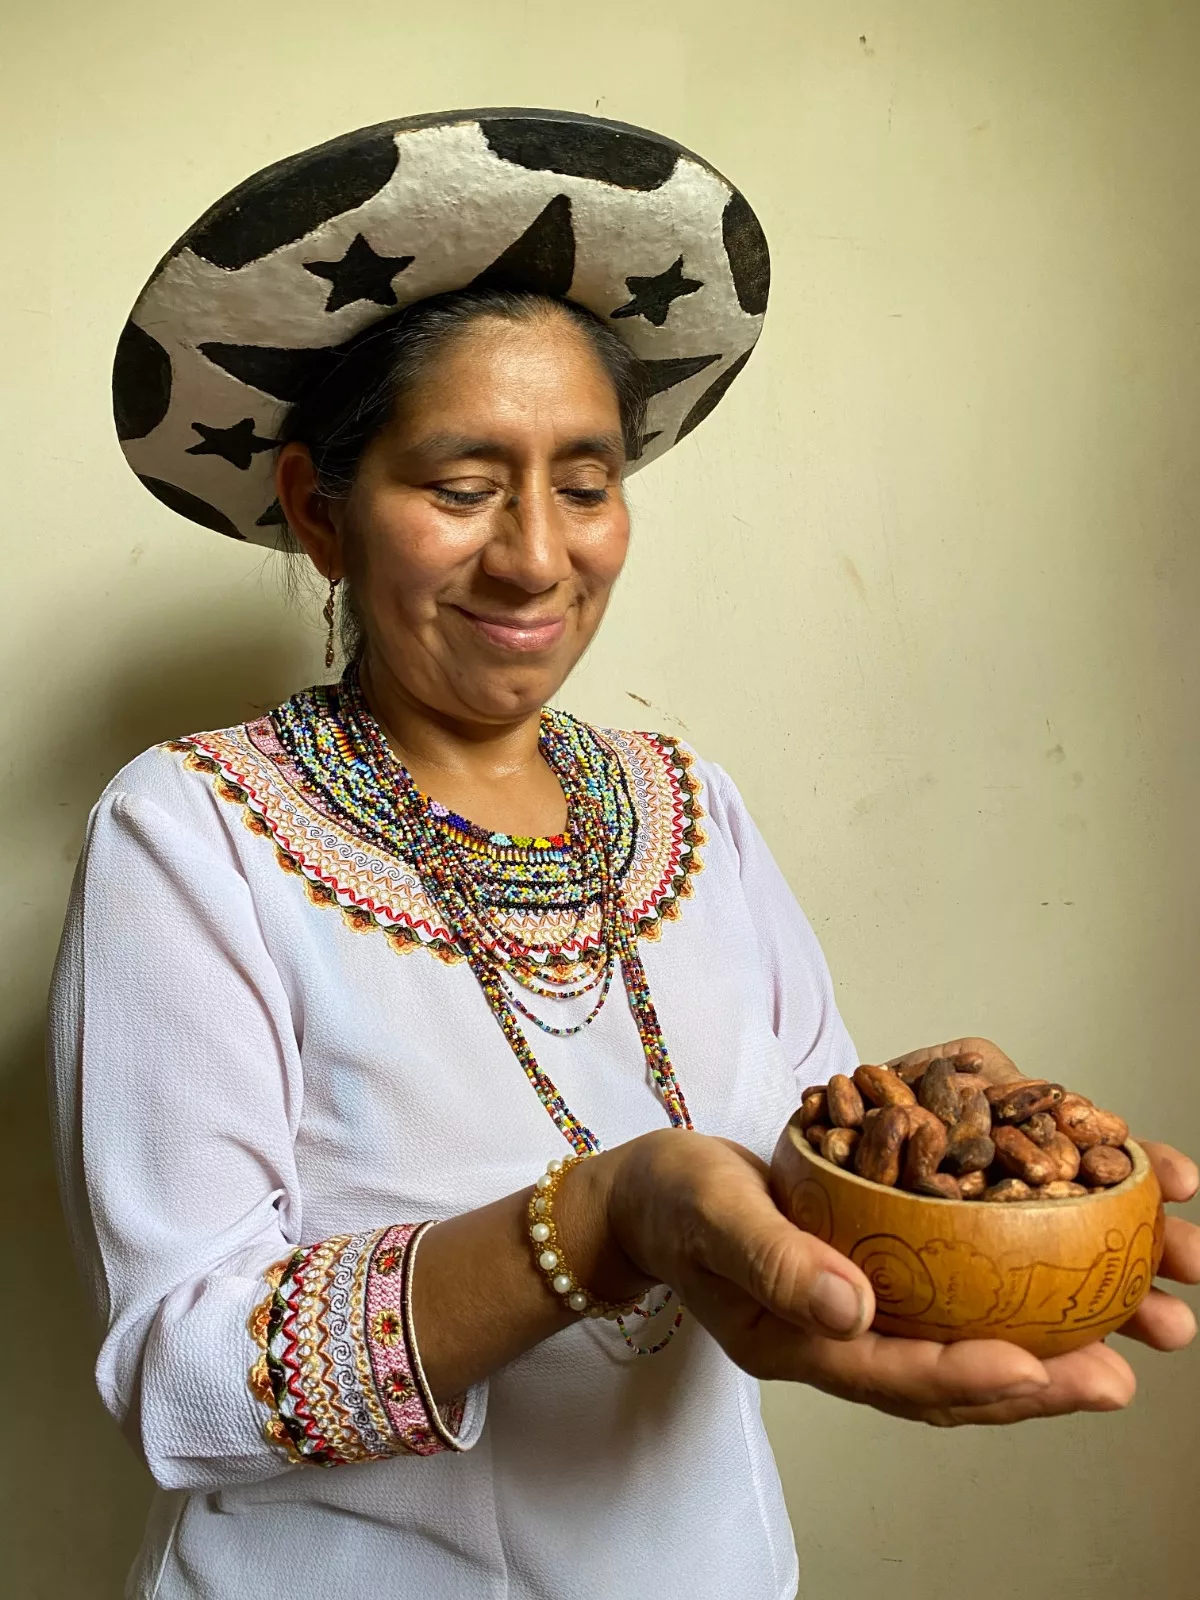 La emprendedora resalta que el valor agregado de Nicka es que se elaboran con cacao fino de aroma de la Amazonía ecuatoriana, que se produce en un sistema agro forestal sin químicos.